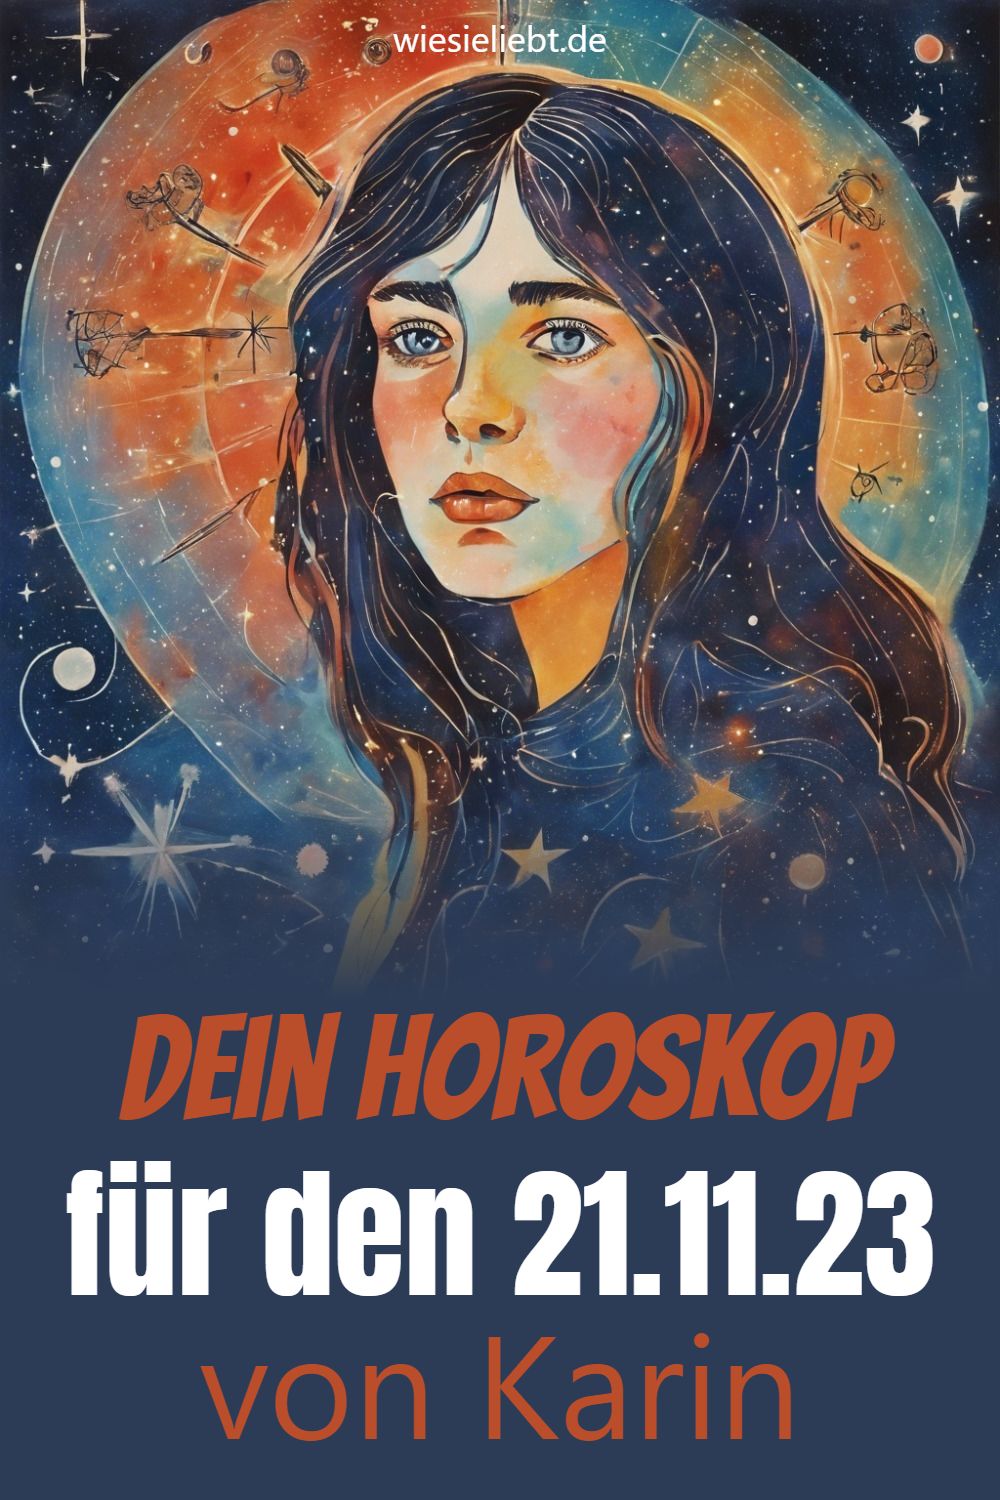 Dein Horoskop für den 21.11.23 von Karin